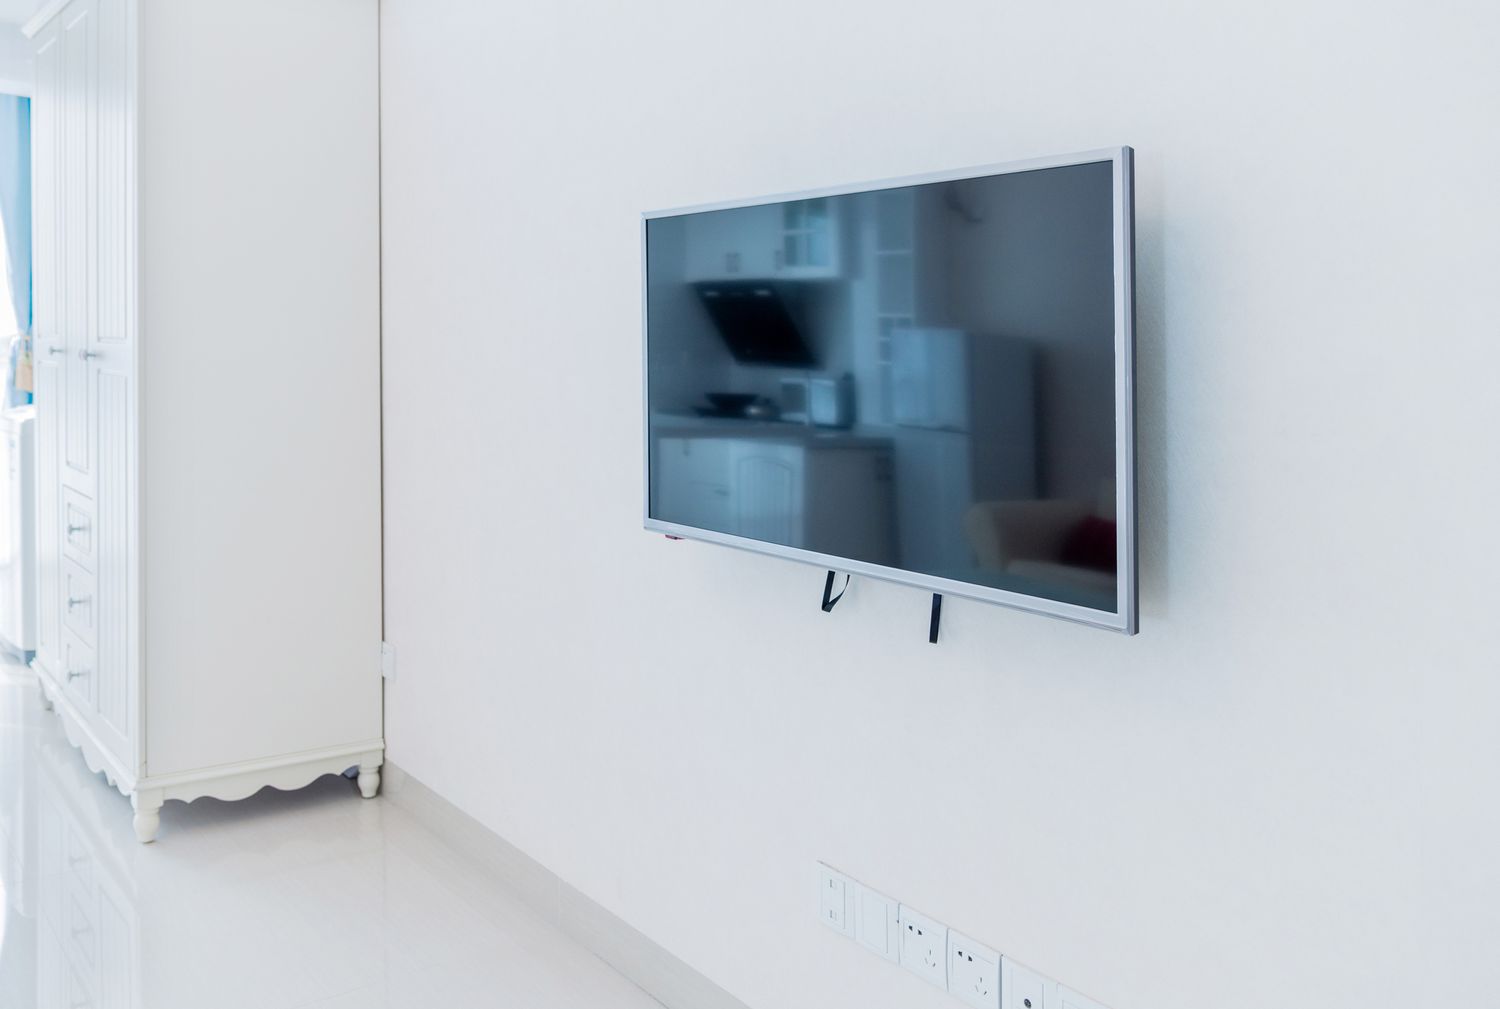 Uma TV de tela plana montada na parede